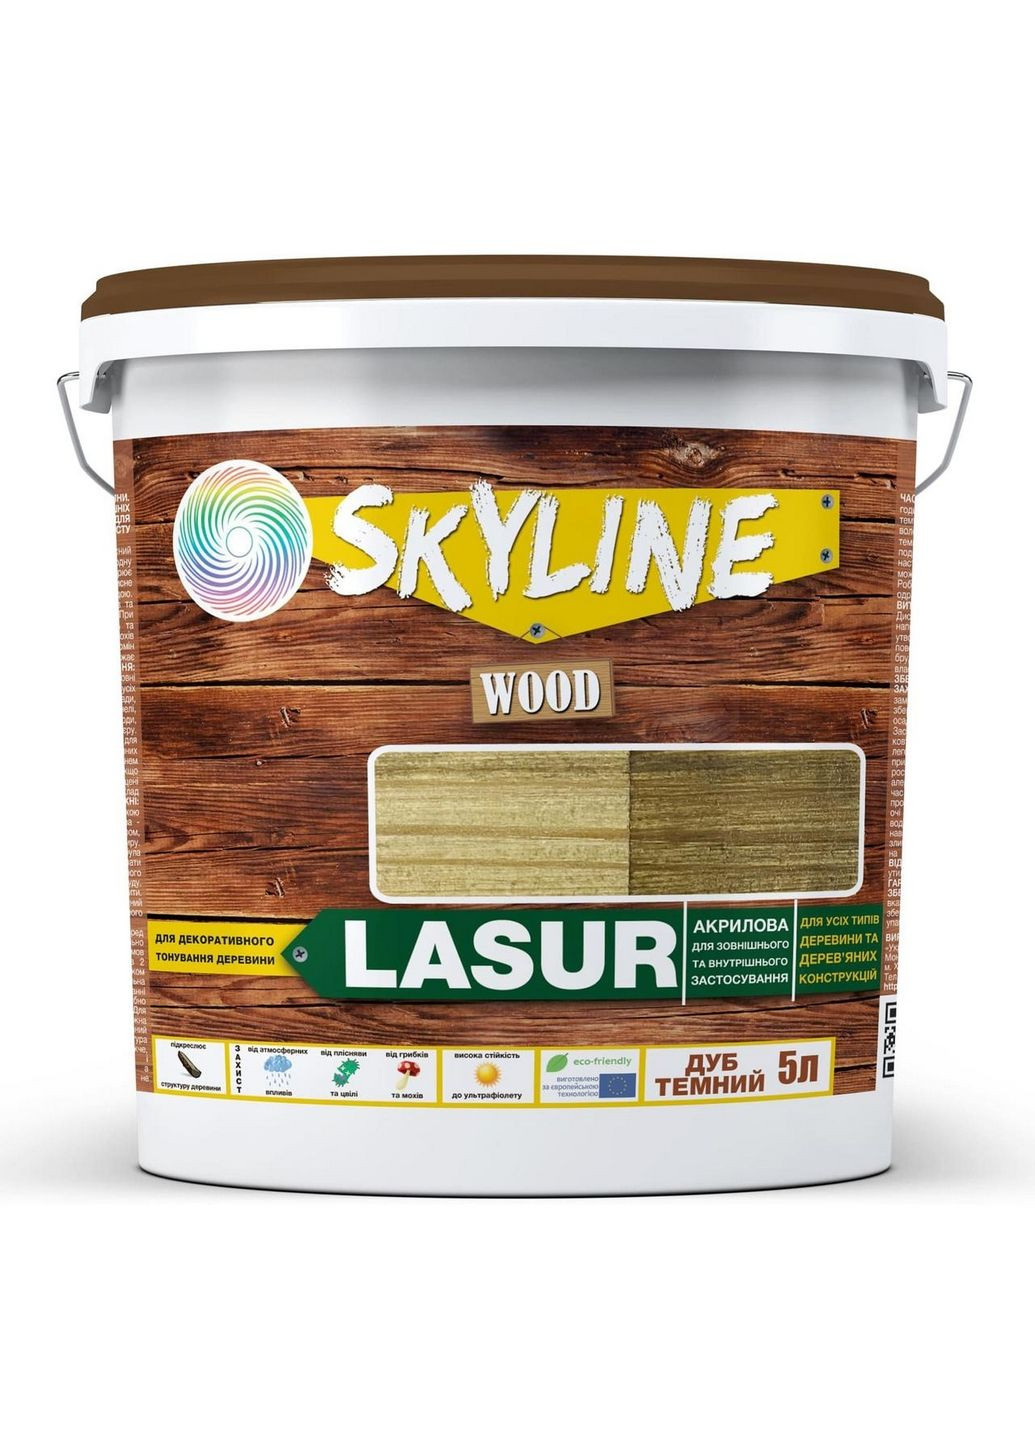 Лазурь декоративно-защитная для обработки дерева LASUR Wood Дуб темный 5л SkyLine (283327527)